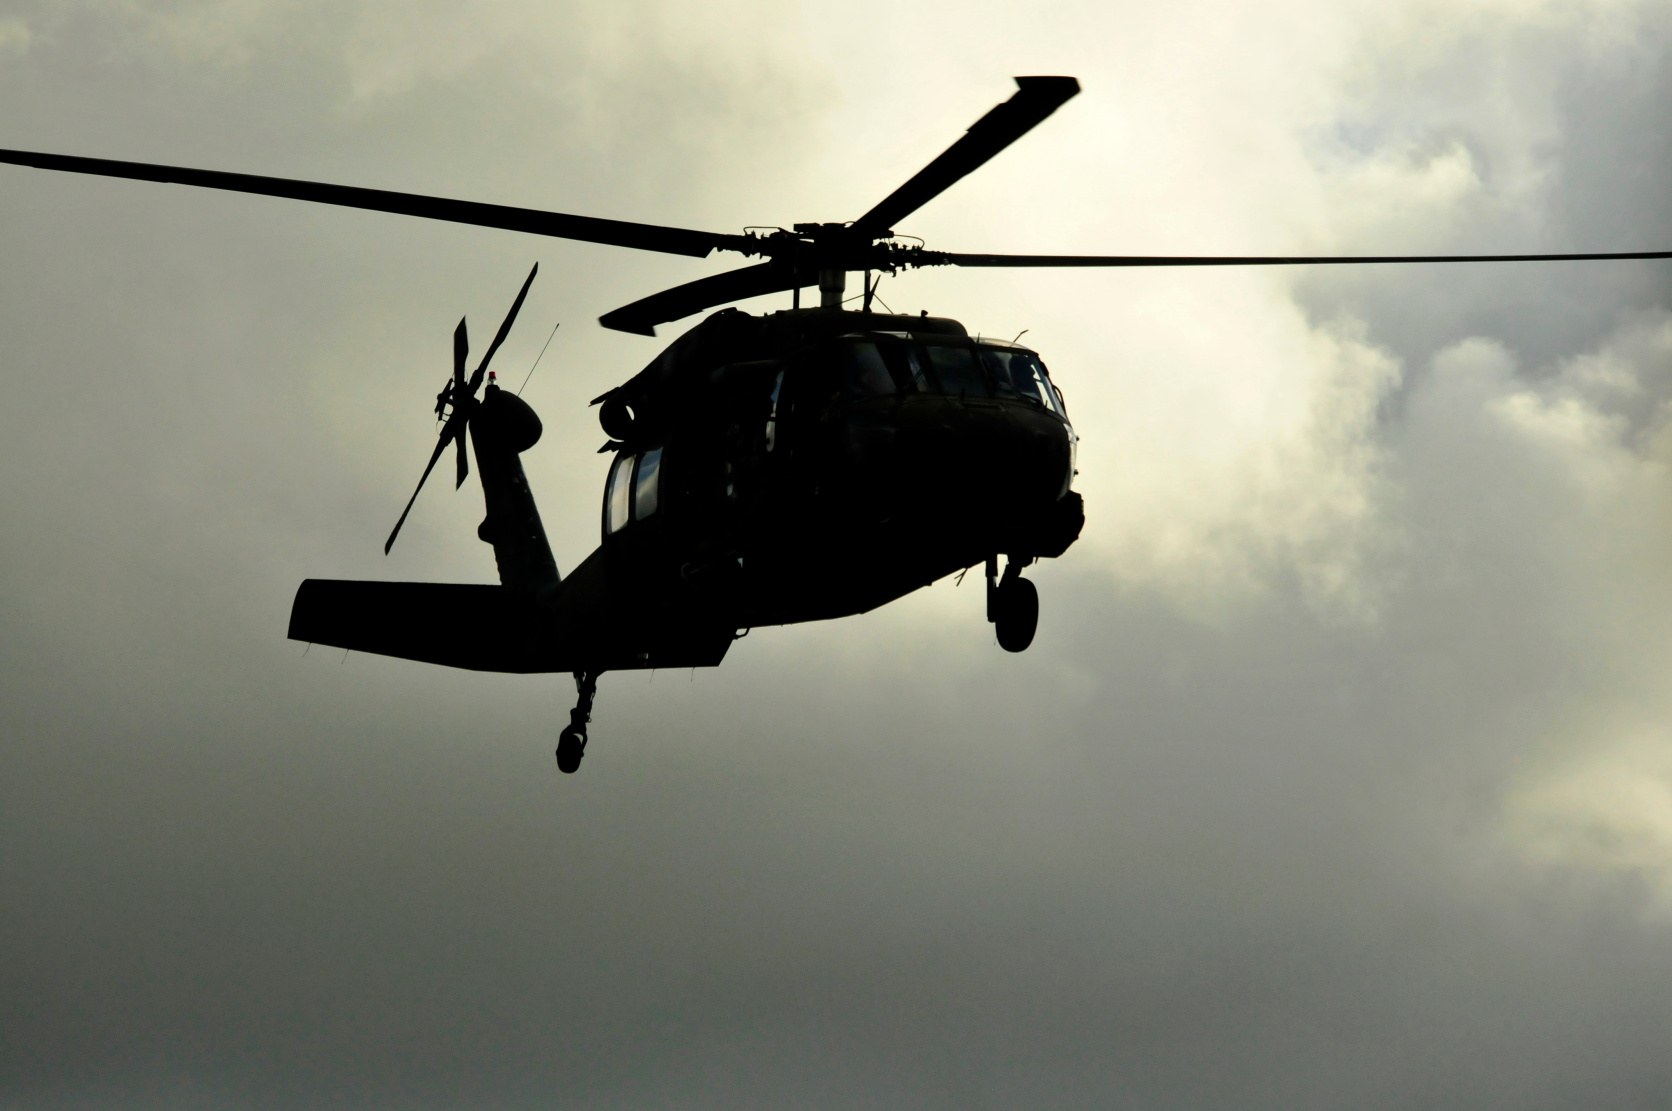 Des hélicoptères noirs banalisés sont décrits dans les théories du complot depuis les années 1970